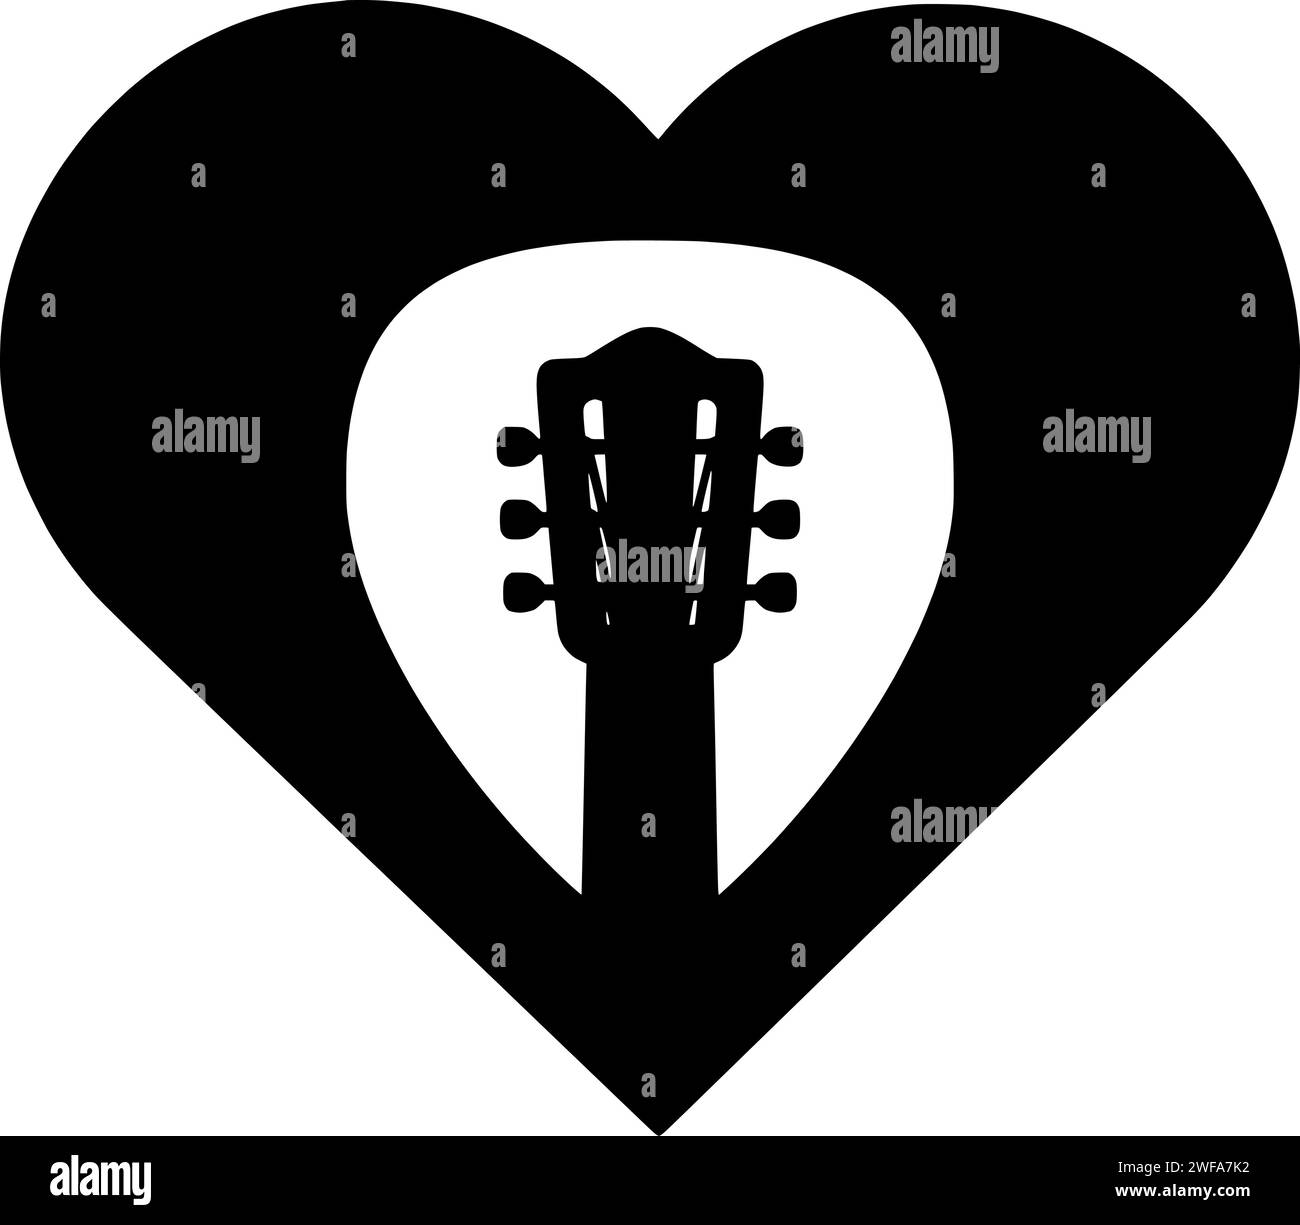 guitare illustration amour silhouette musique logo coeur icône contour musical son rock concert instrument acoustique rétro élément chanson valentine forme musicien corde noire Illustration de Vecteur